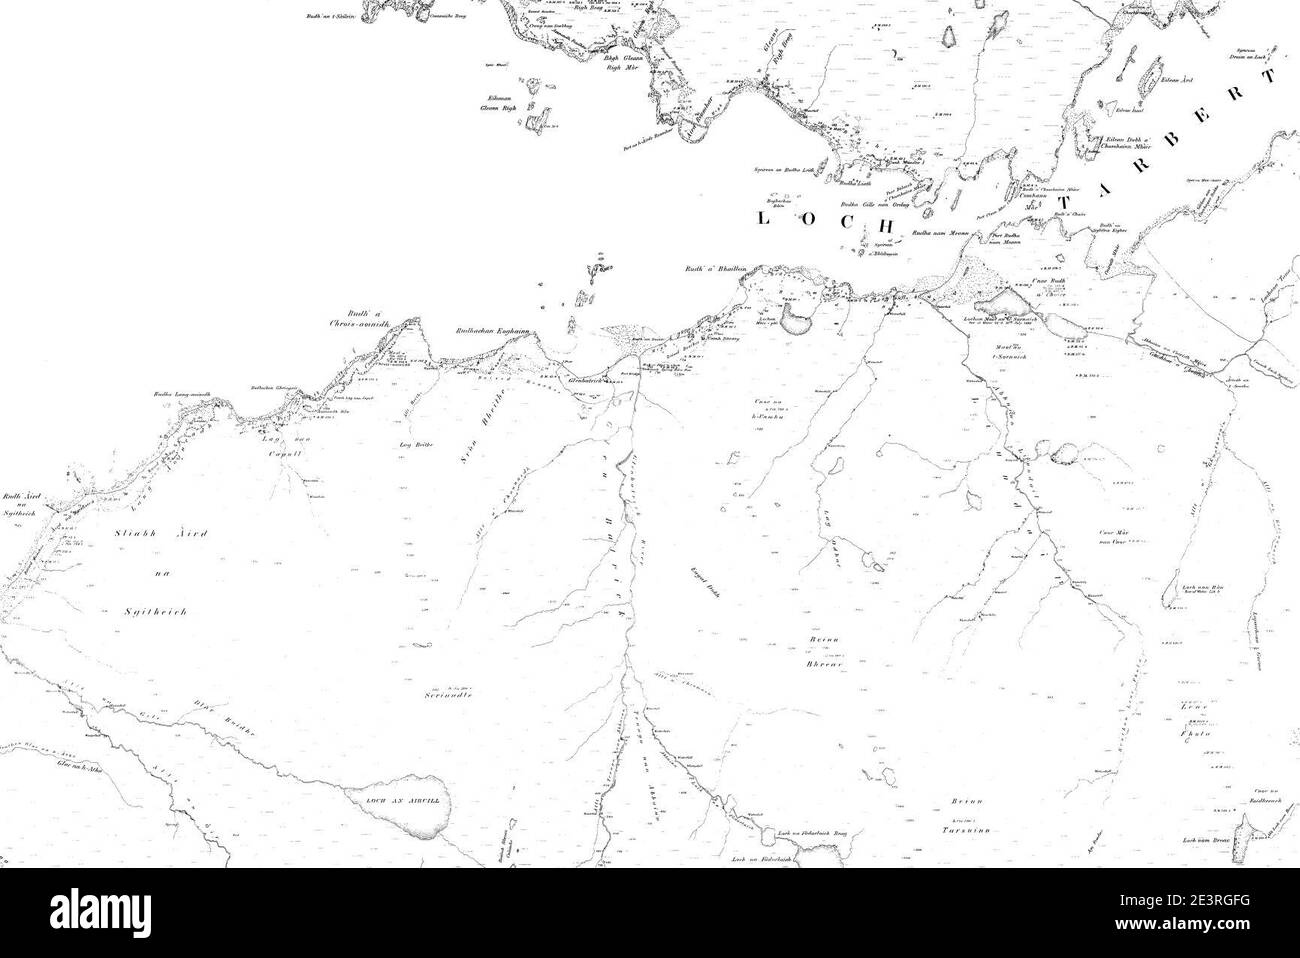 Map of Argyllshire Sheet 177, Ordnance Survey, 1868-1883. Stock Photo